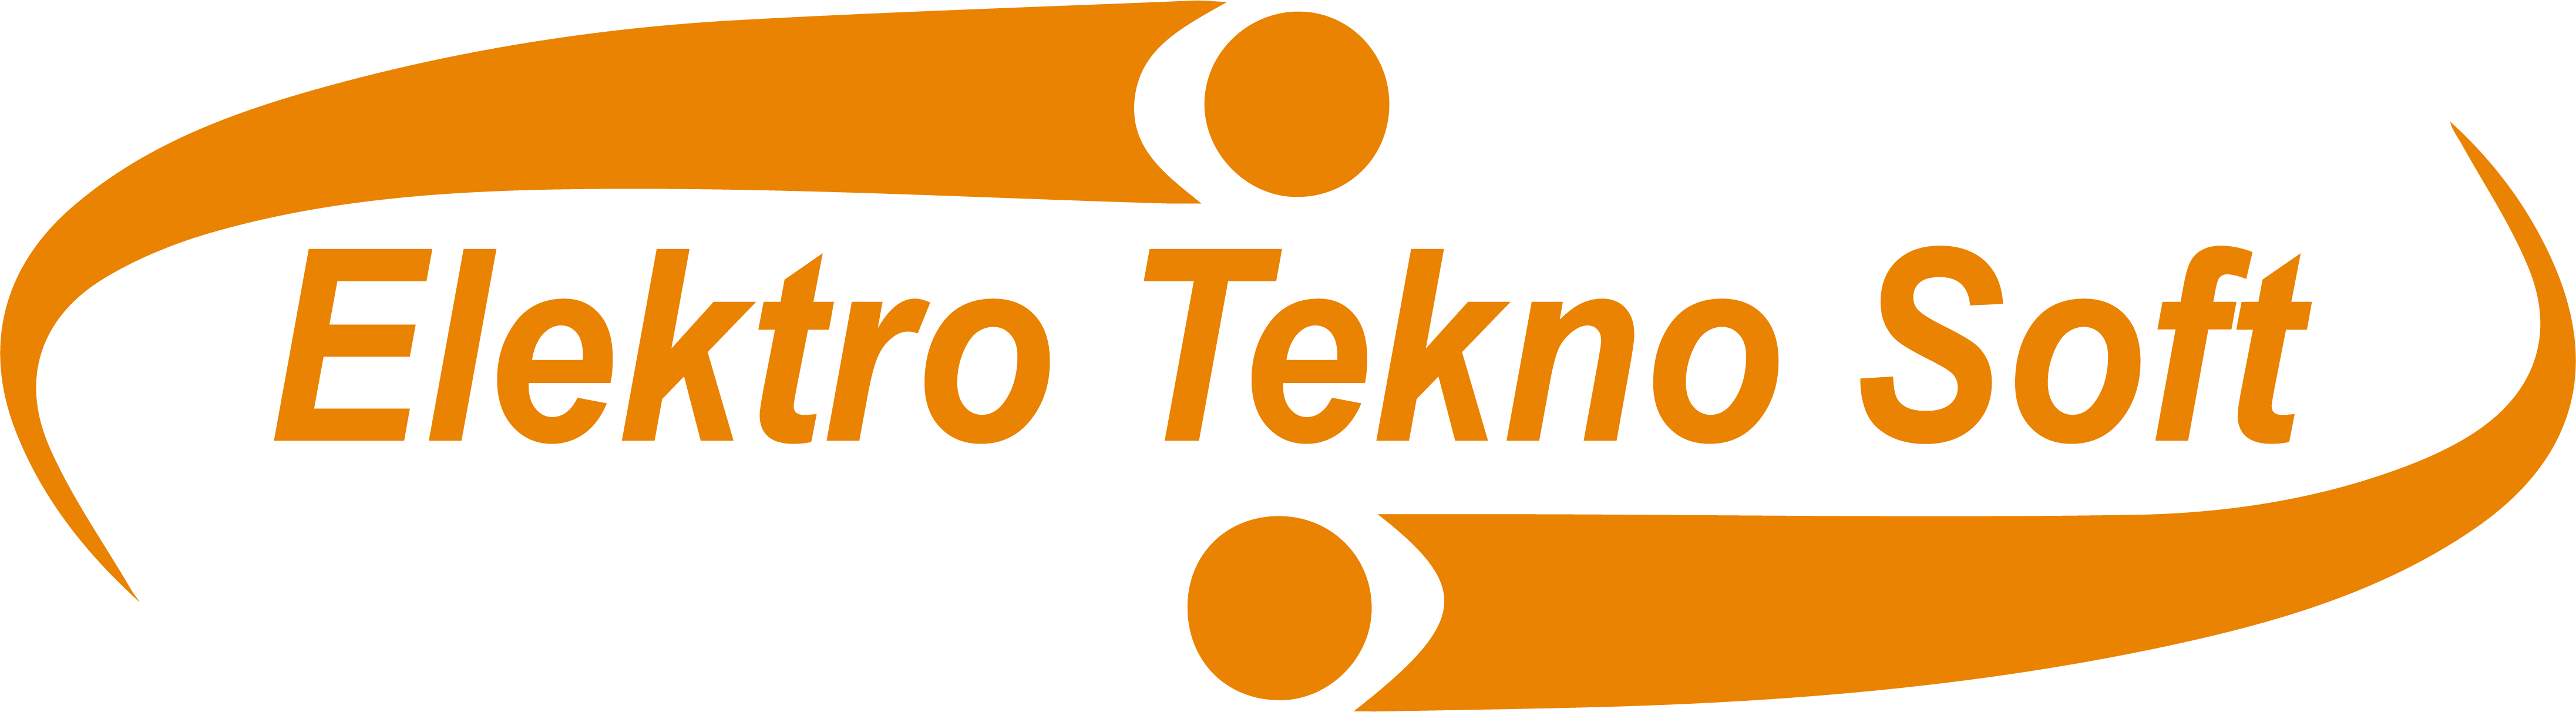 Elektro Tekno Soft